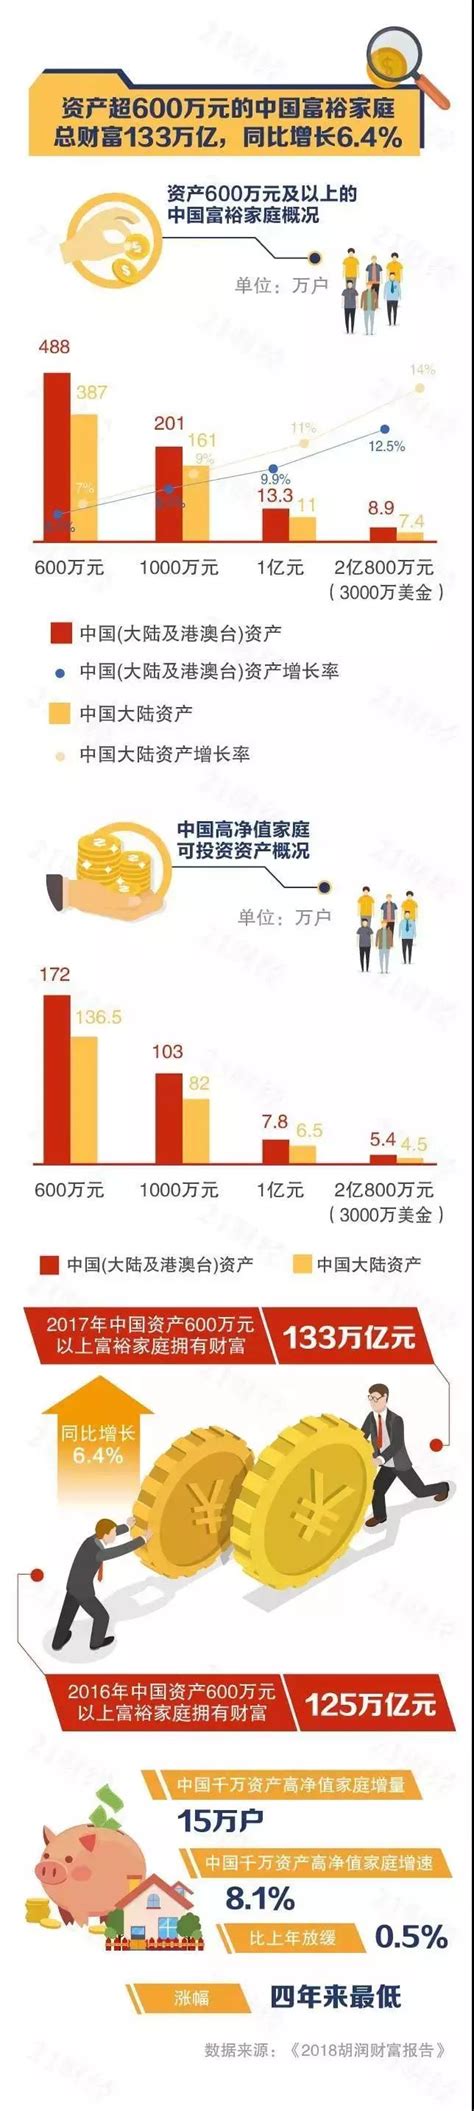 最有钱企业排行榜_中国最有钱的企业排行榜(3)_中国排行网